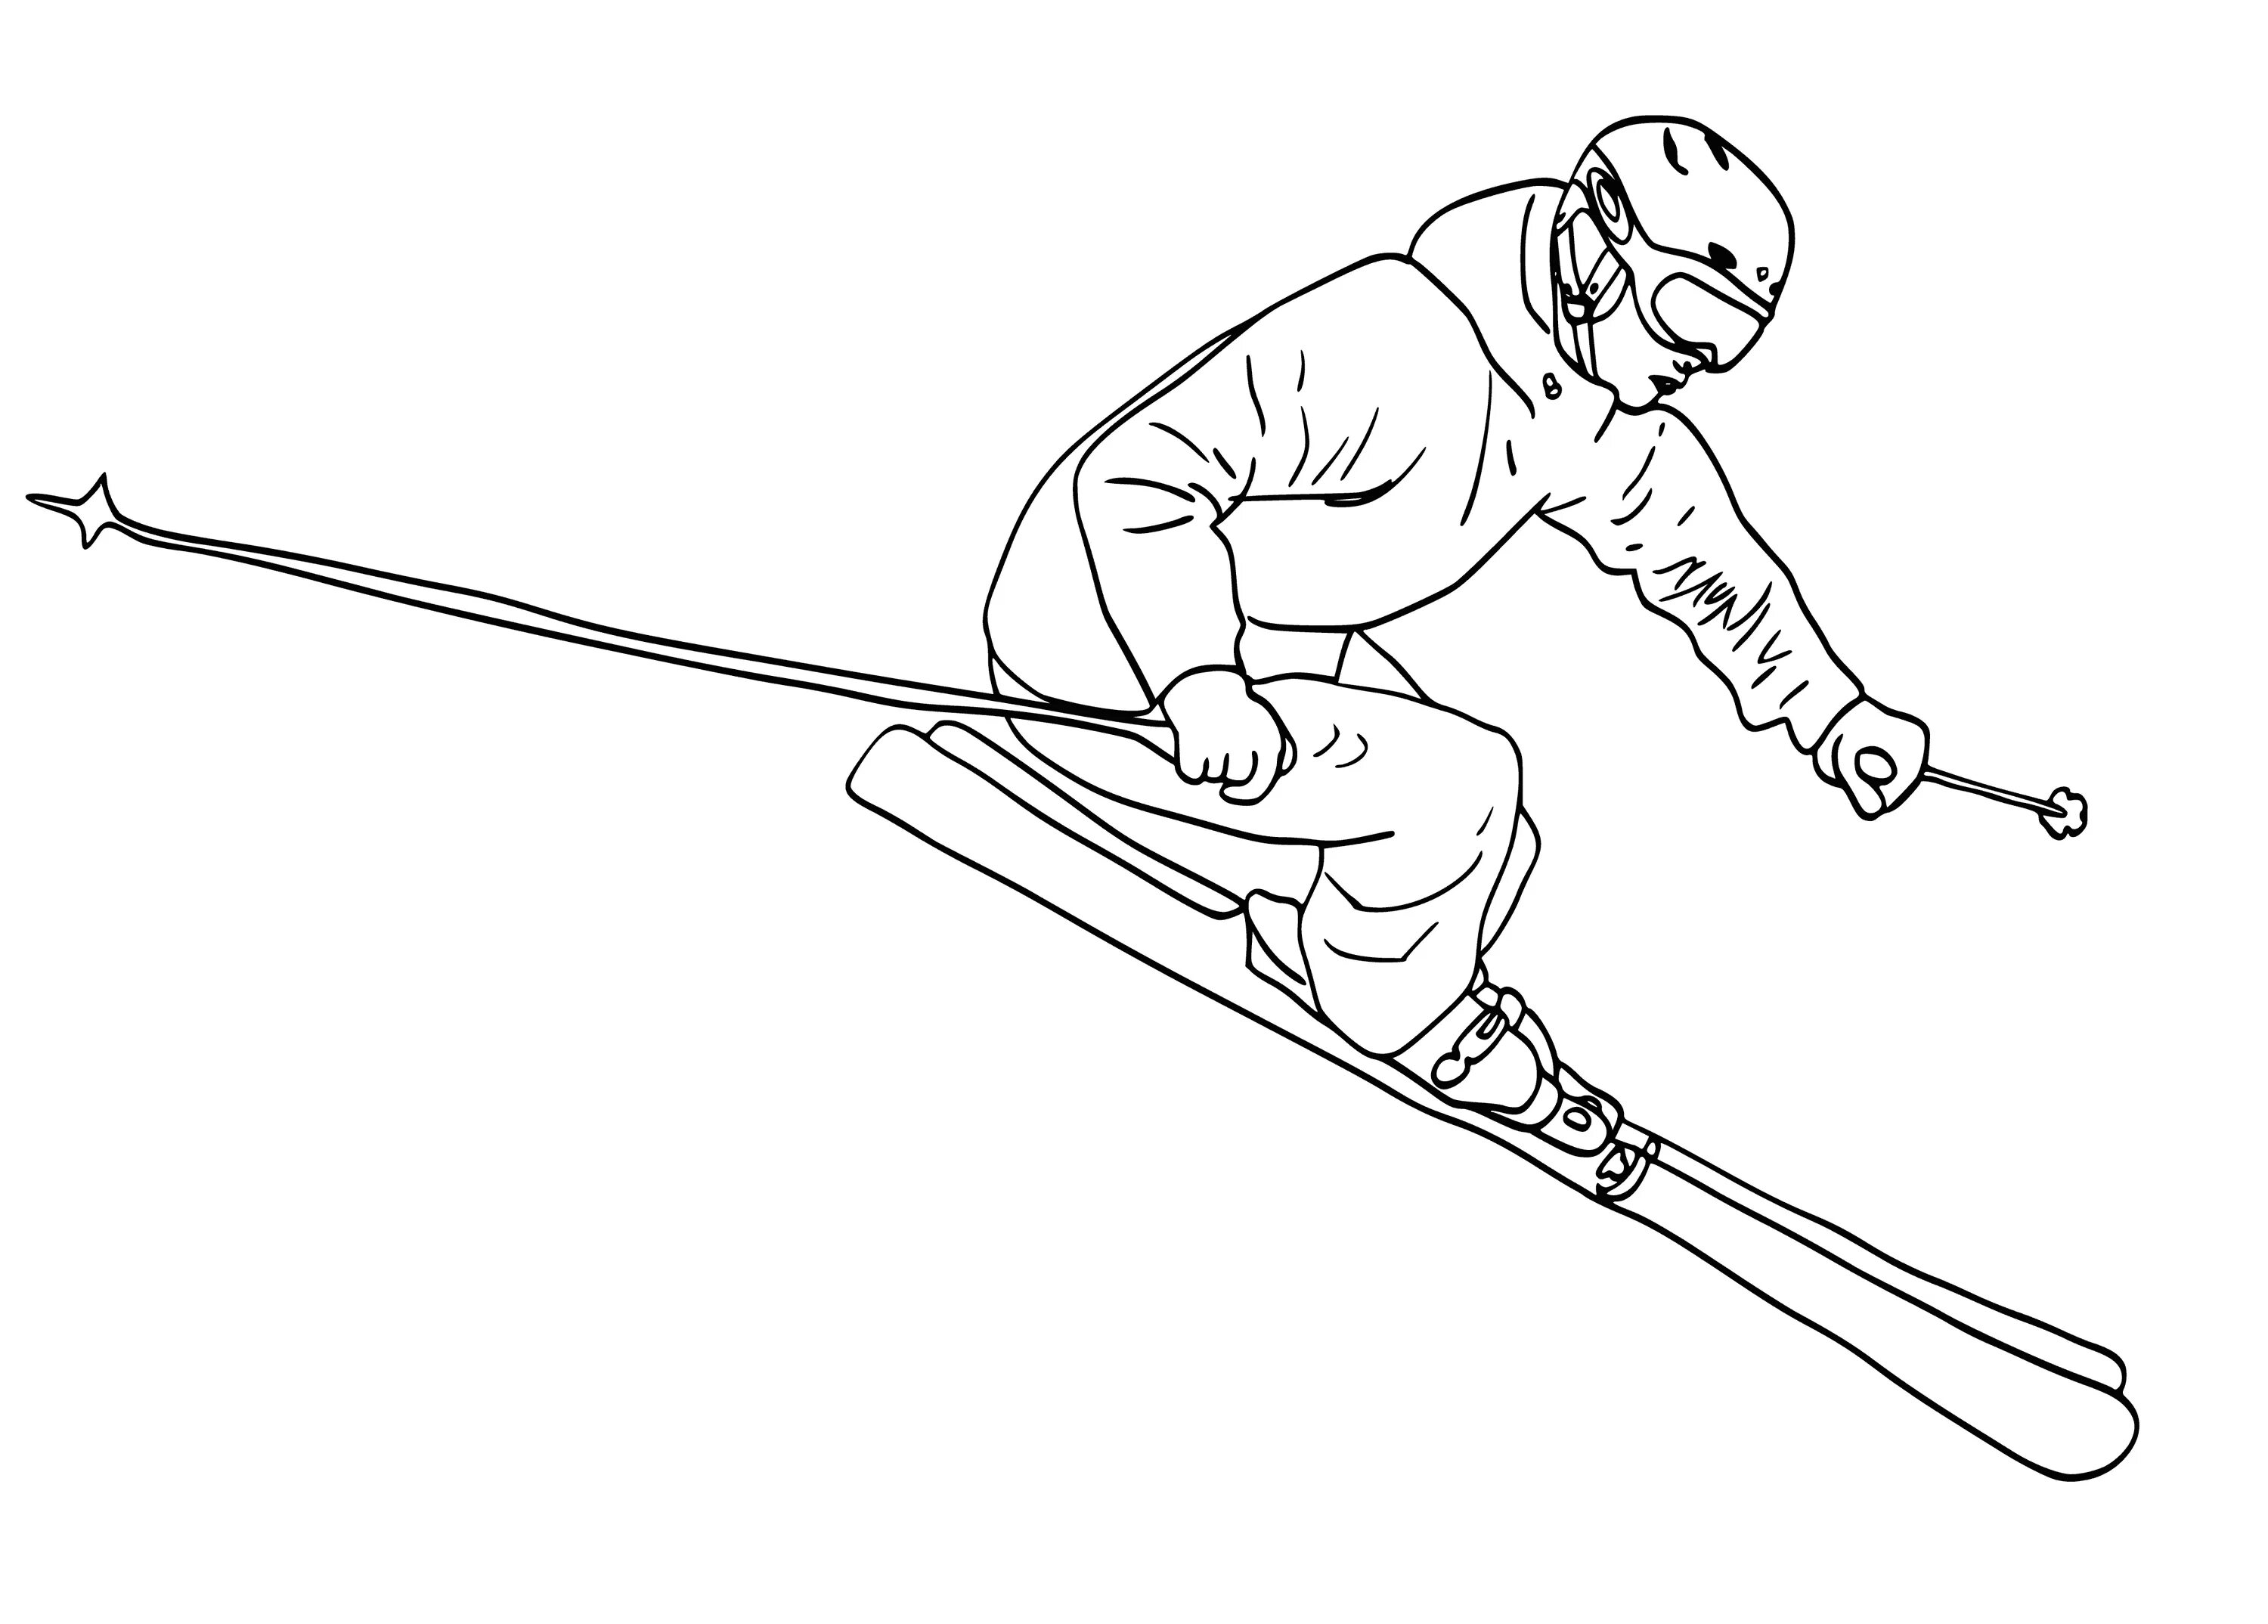 Skier #6